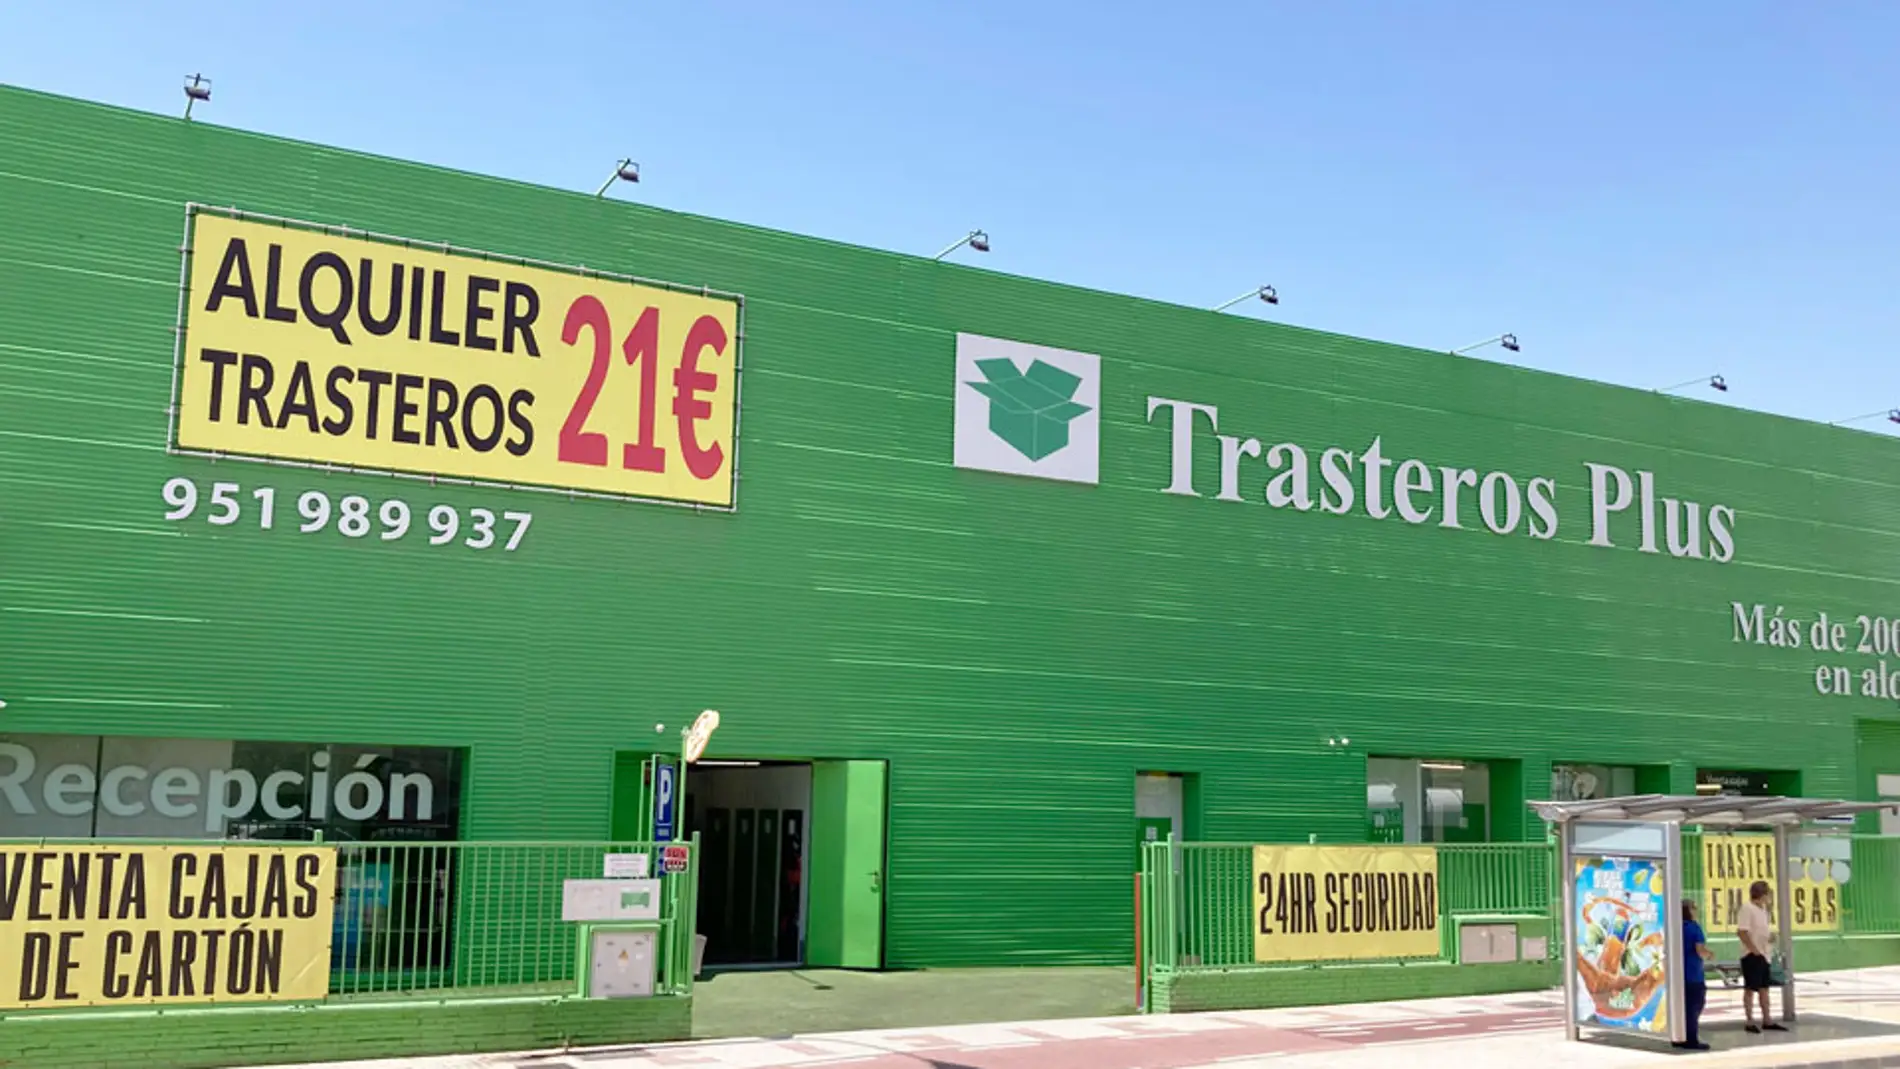 El fenómeno de las subastas de trasteros llega a Málaga de nuevo, de la mano de Trasteros Plus